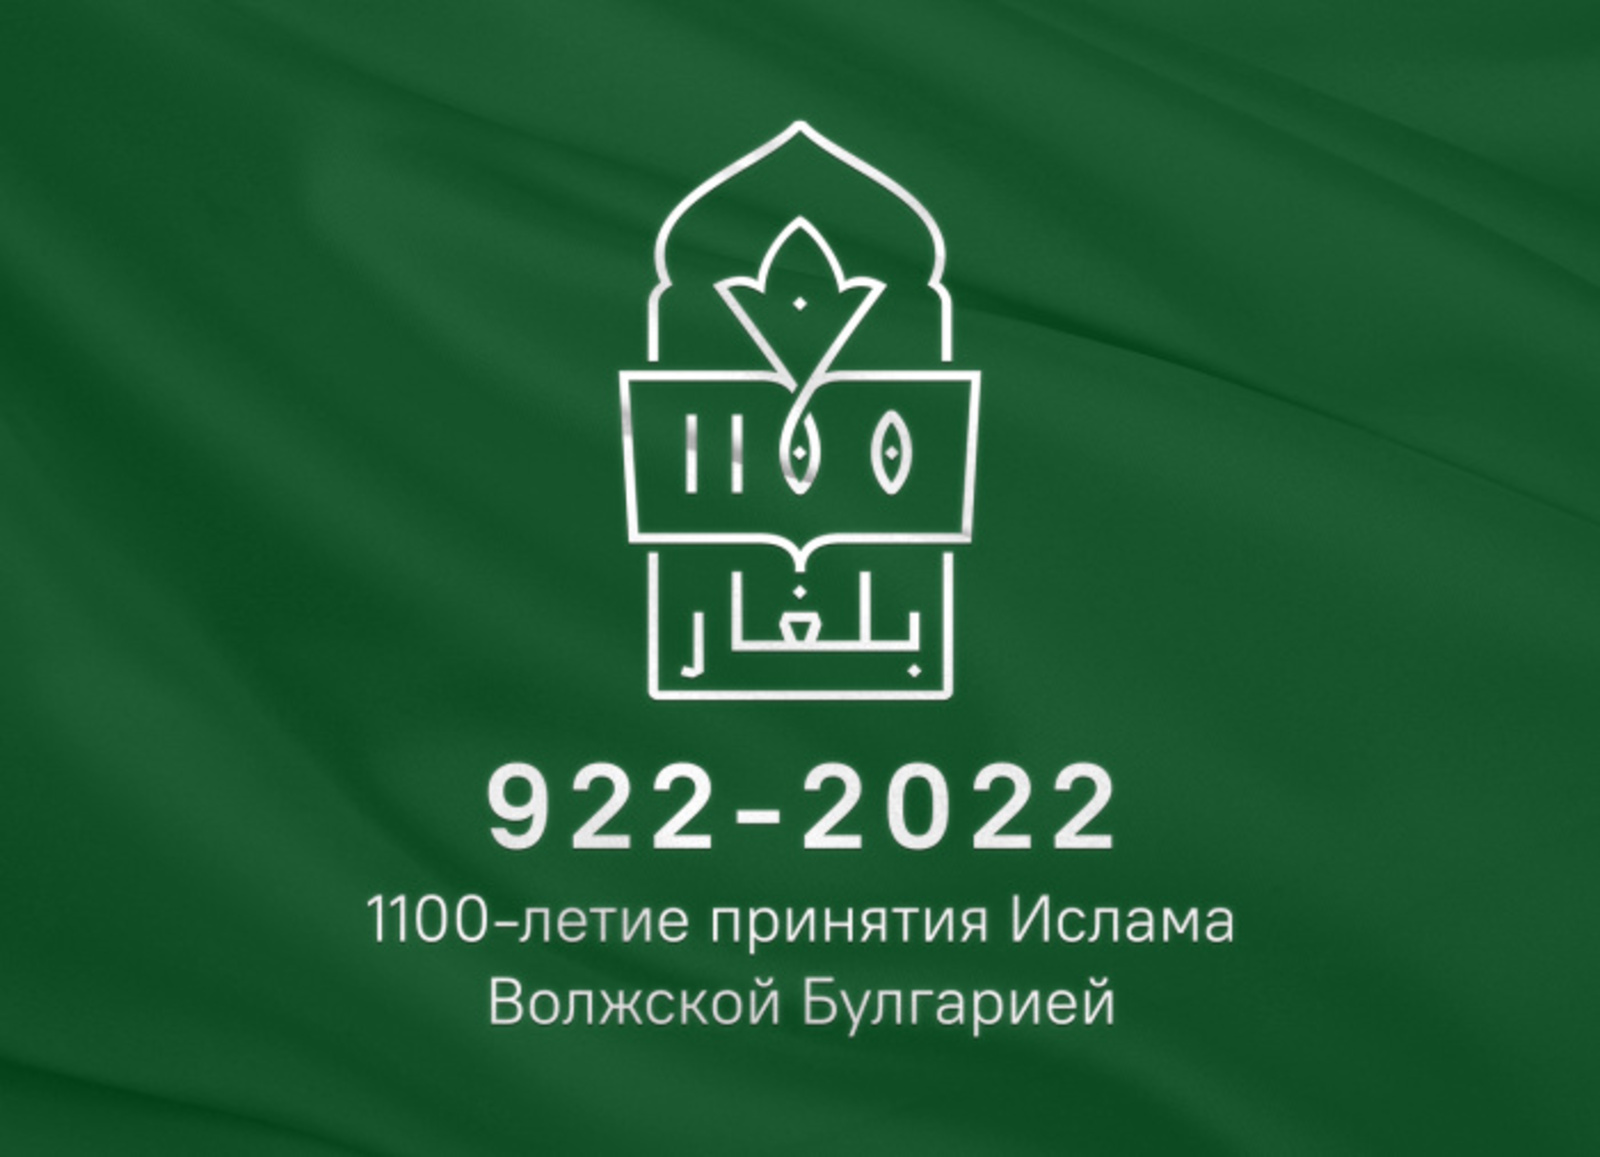 В 2022 году отмечается 1100-летие принятия ислама Волжской Булгарией